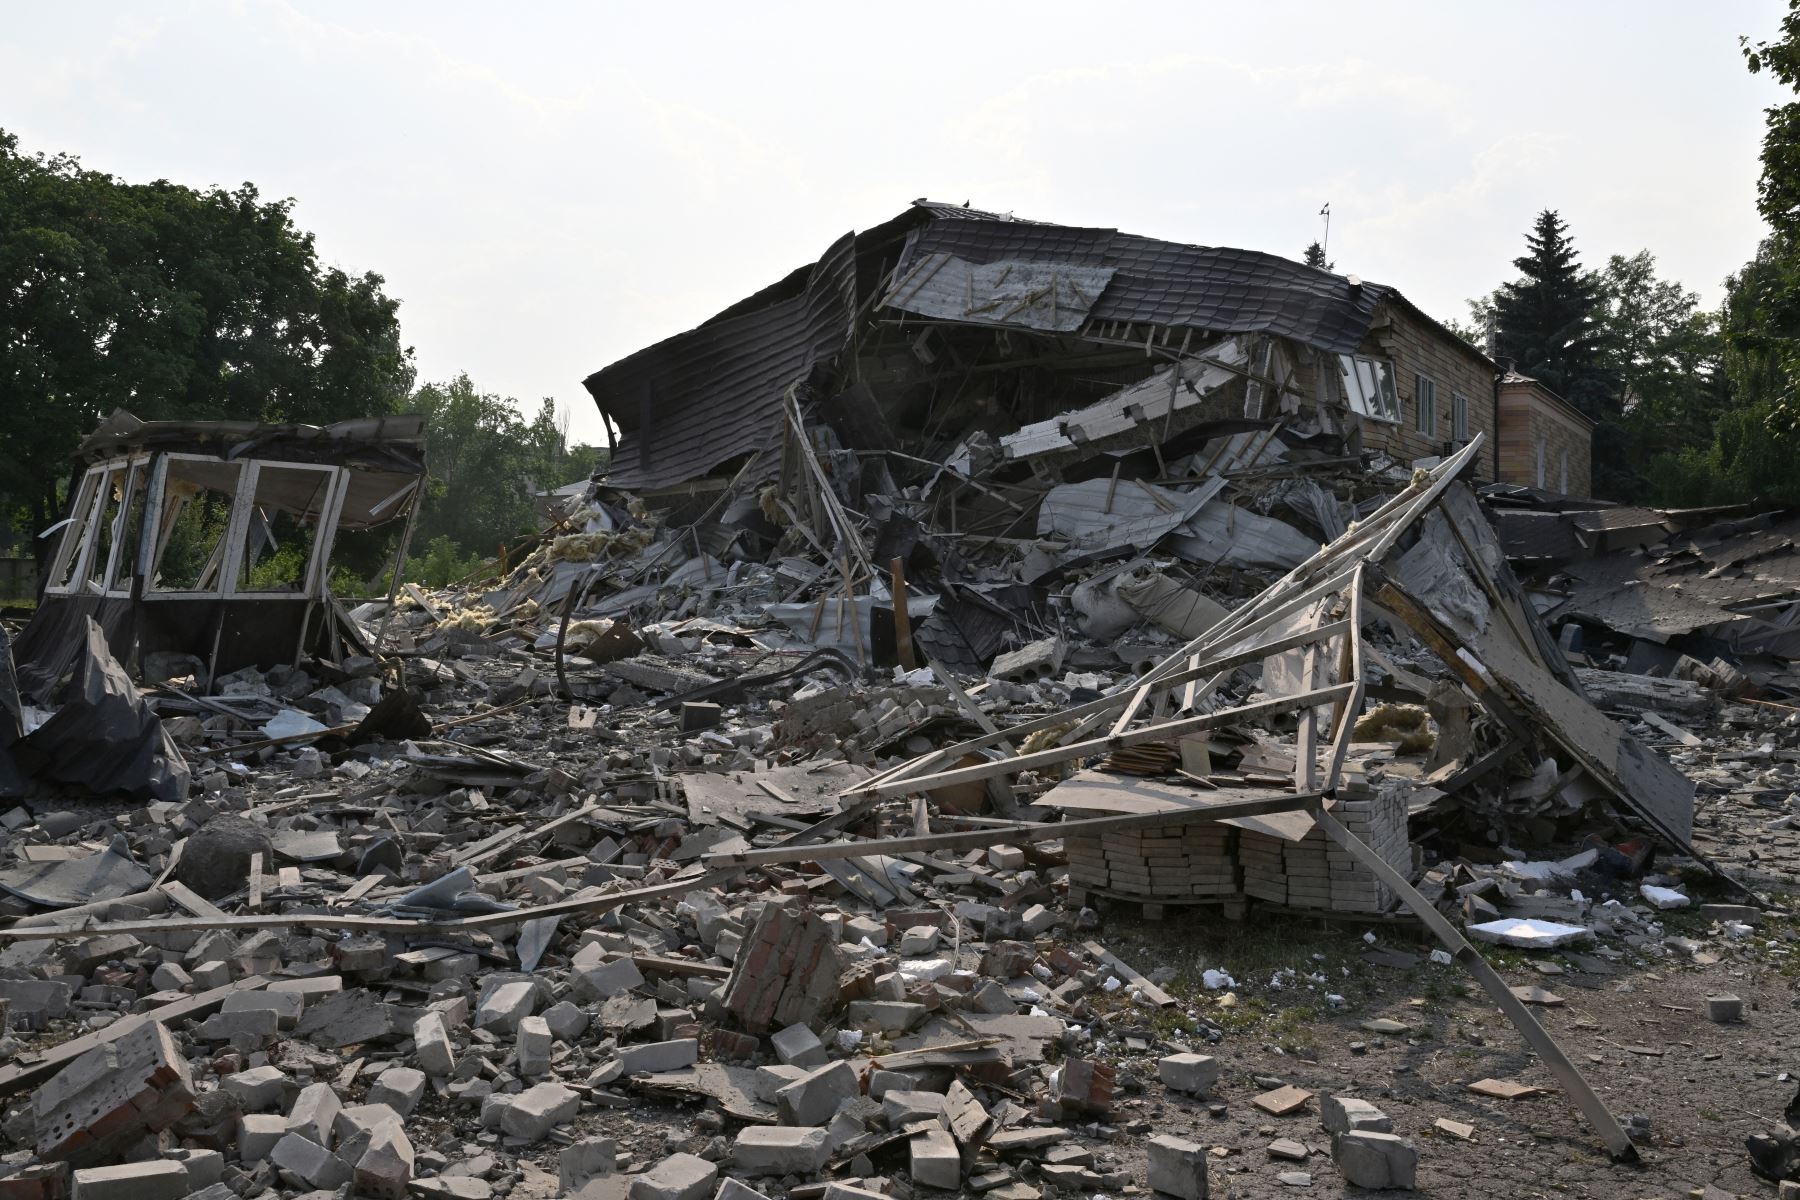 Escombros de un hotel destruido después de un ataque con cohetes en Kramatorsk, en medio de la invasión rusa de Ucrania.
Foto: AFP